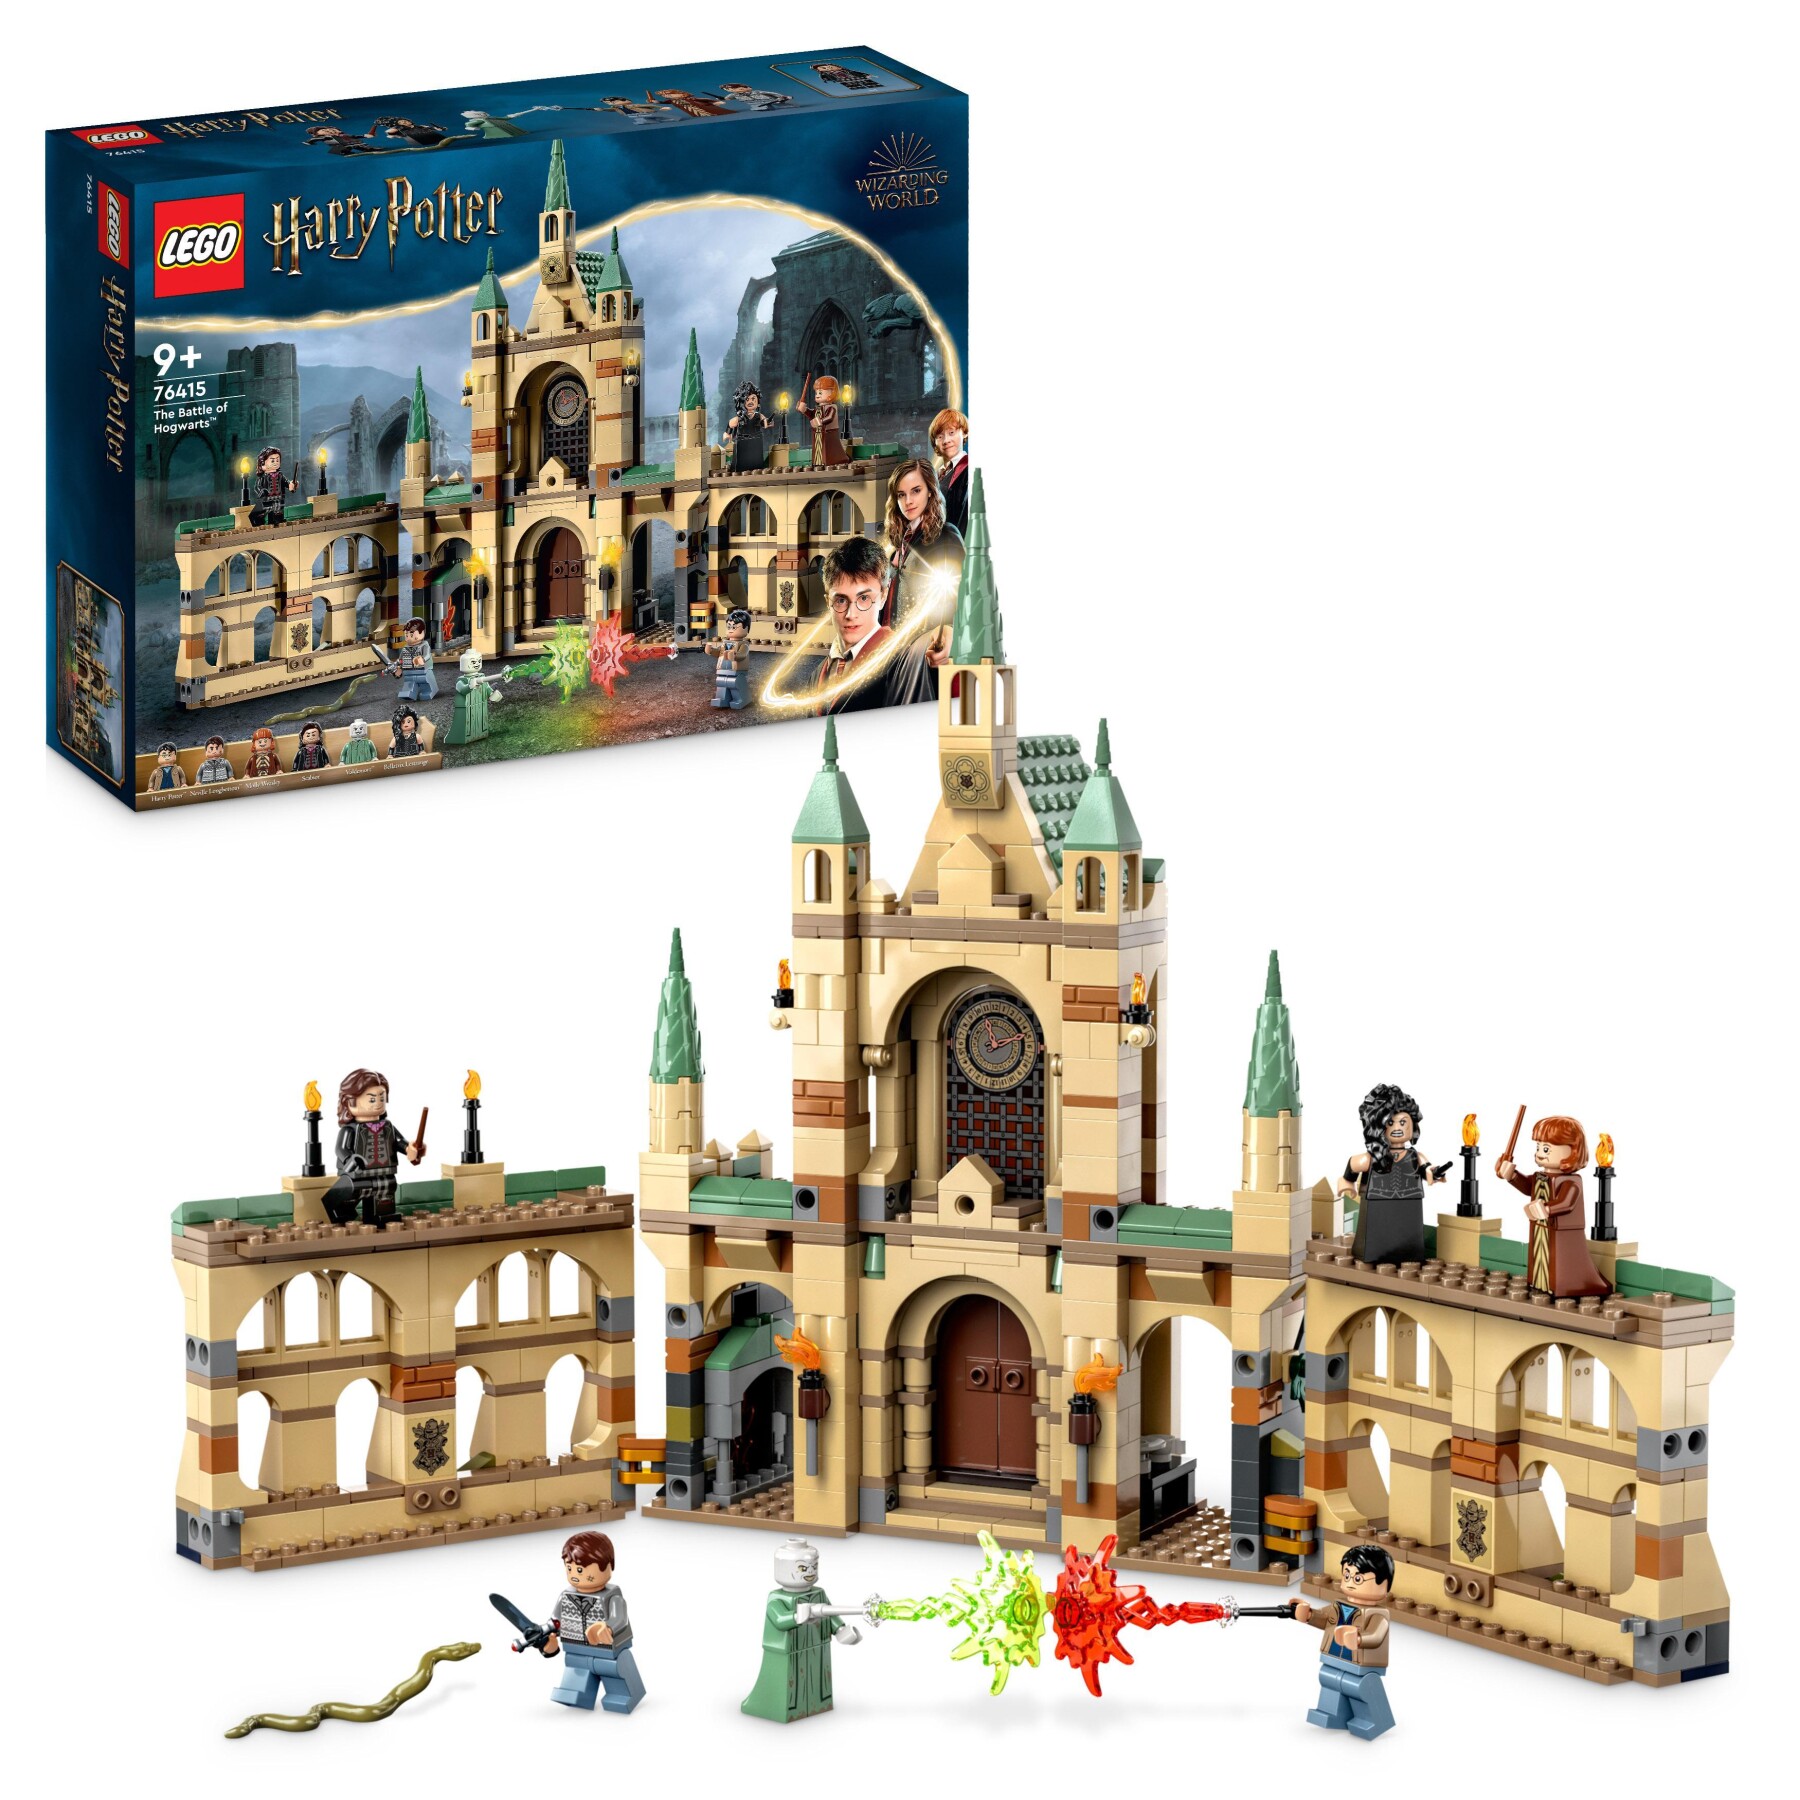 Lego harry potter 76415 la battaglia di hogwarts, castello giocattolo con  minifigure di bellatrix lestrange e voldemort - Toys Center